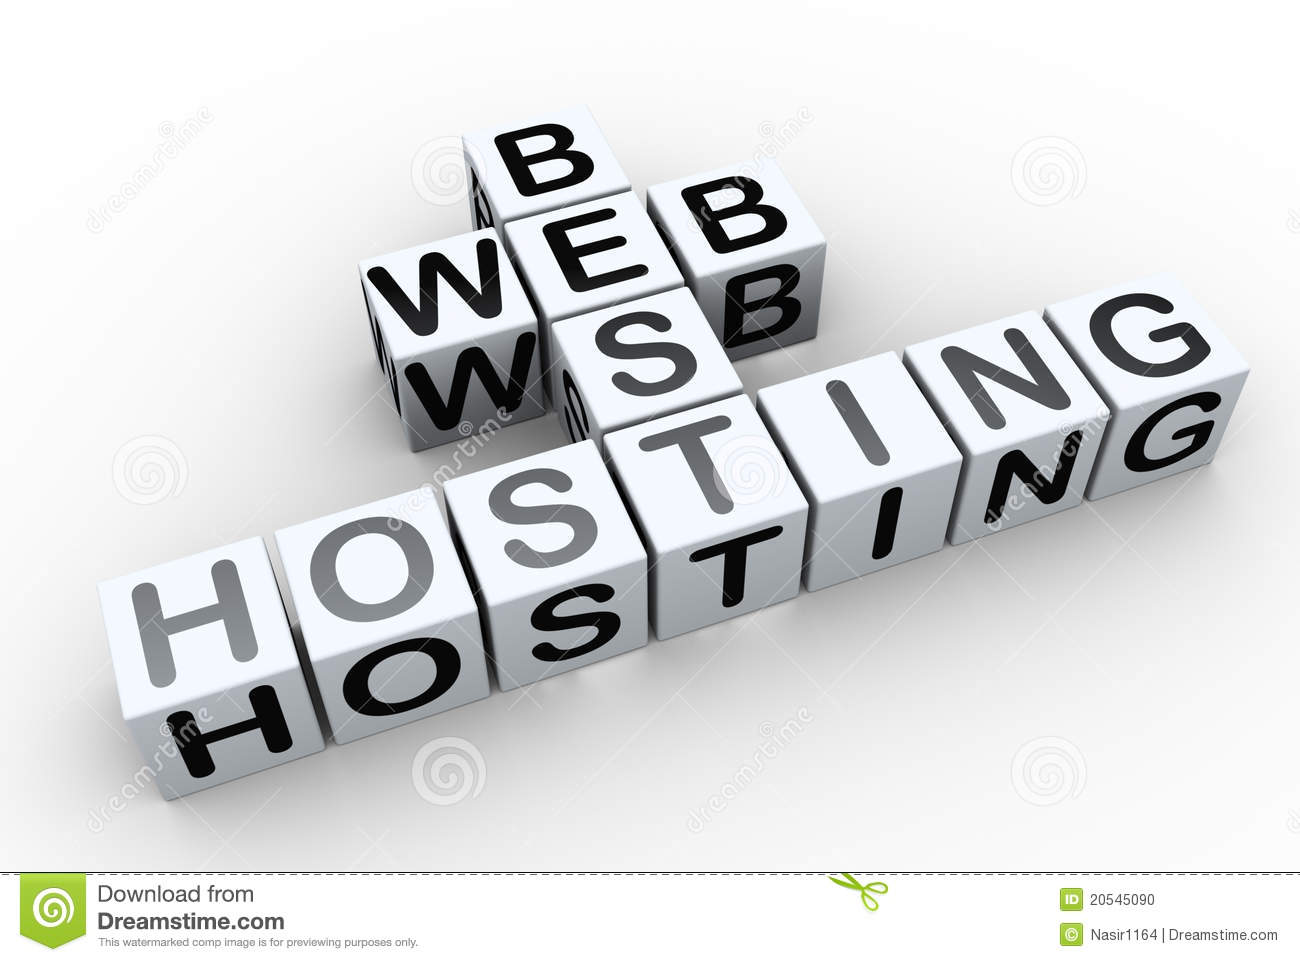 Hosting Pod Wordpress